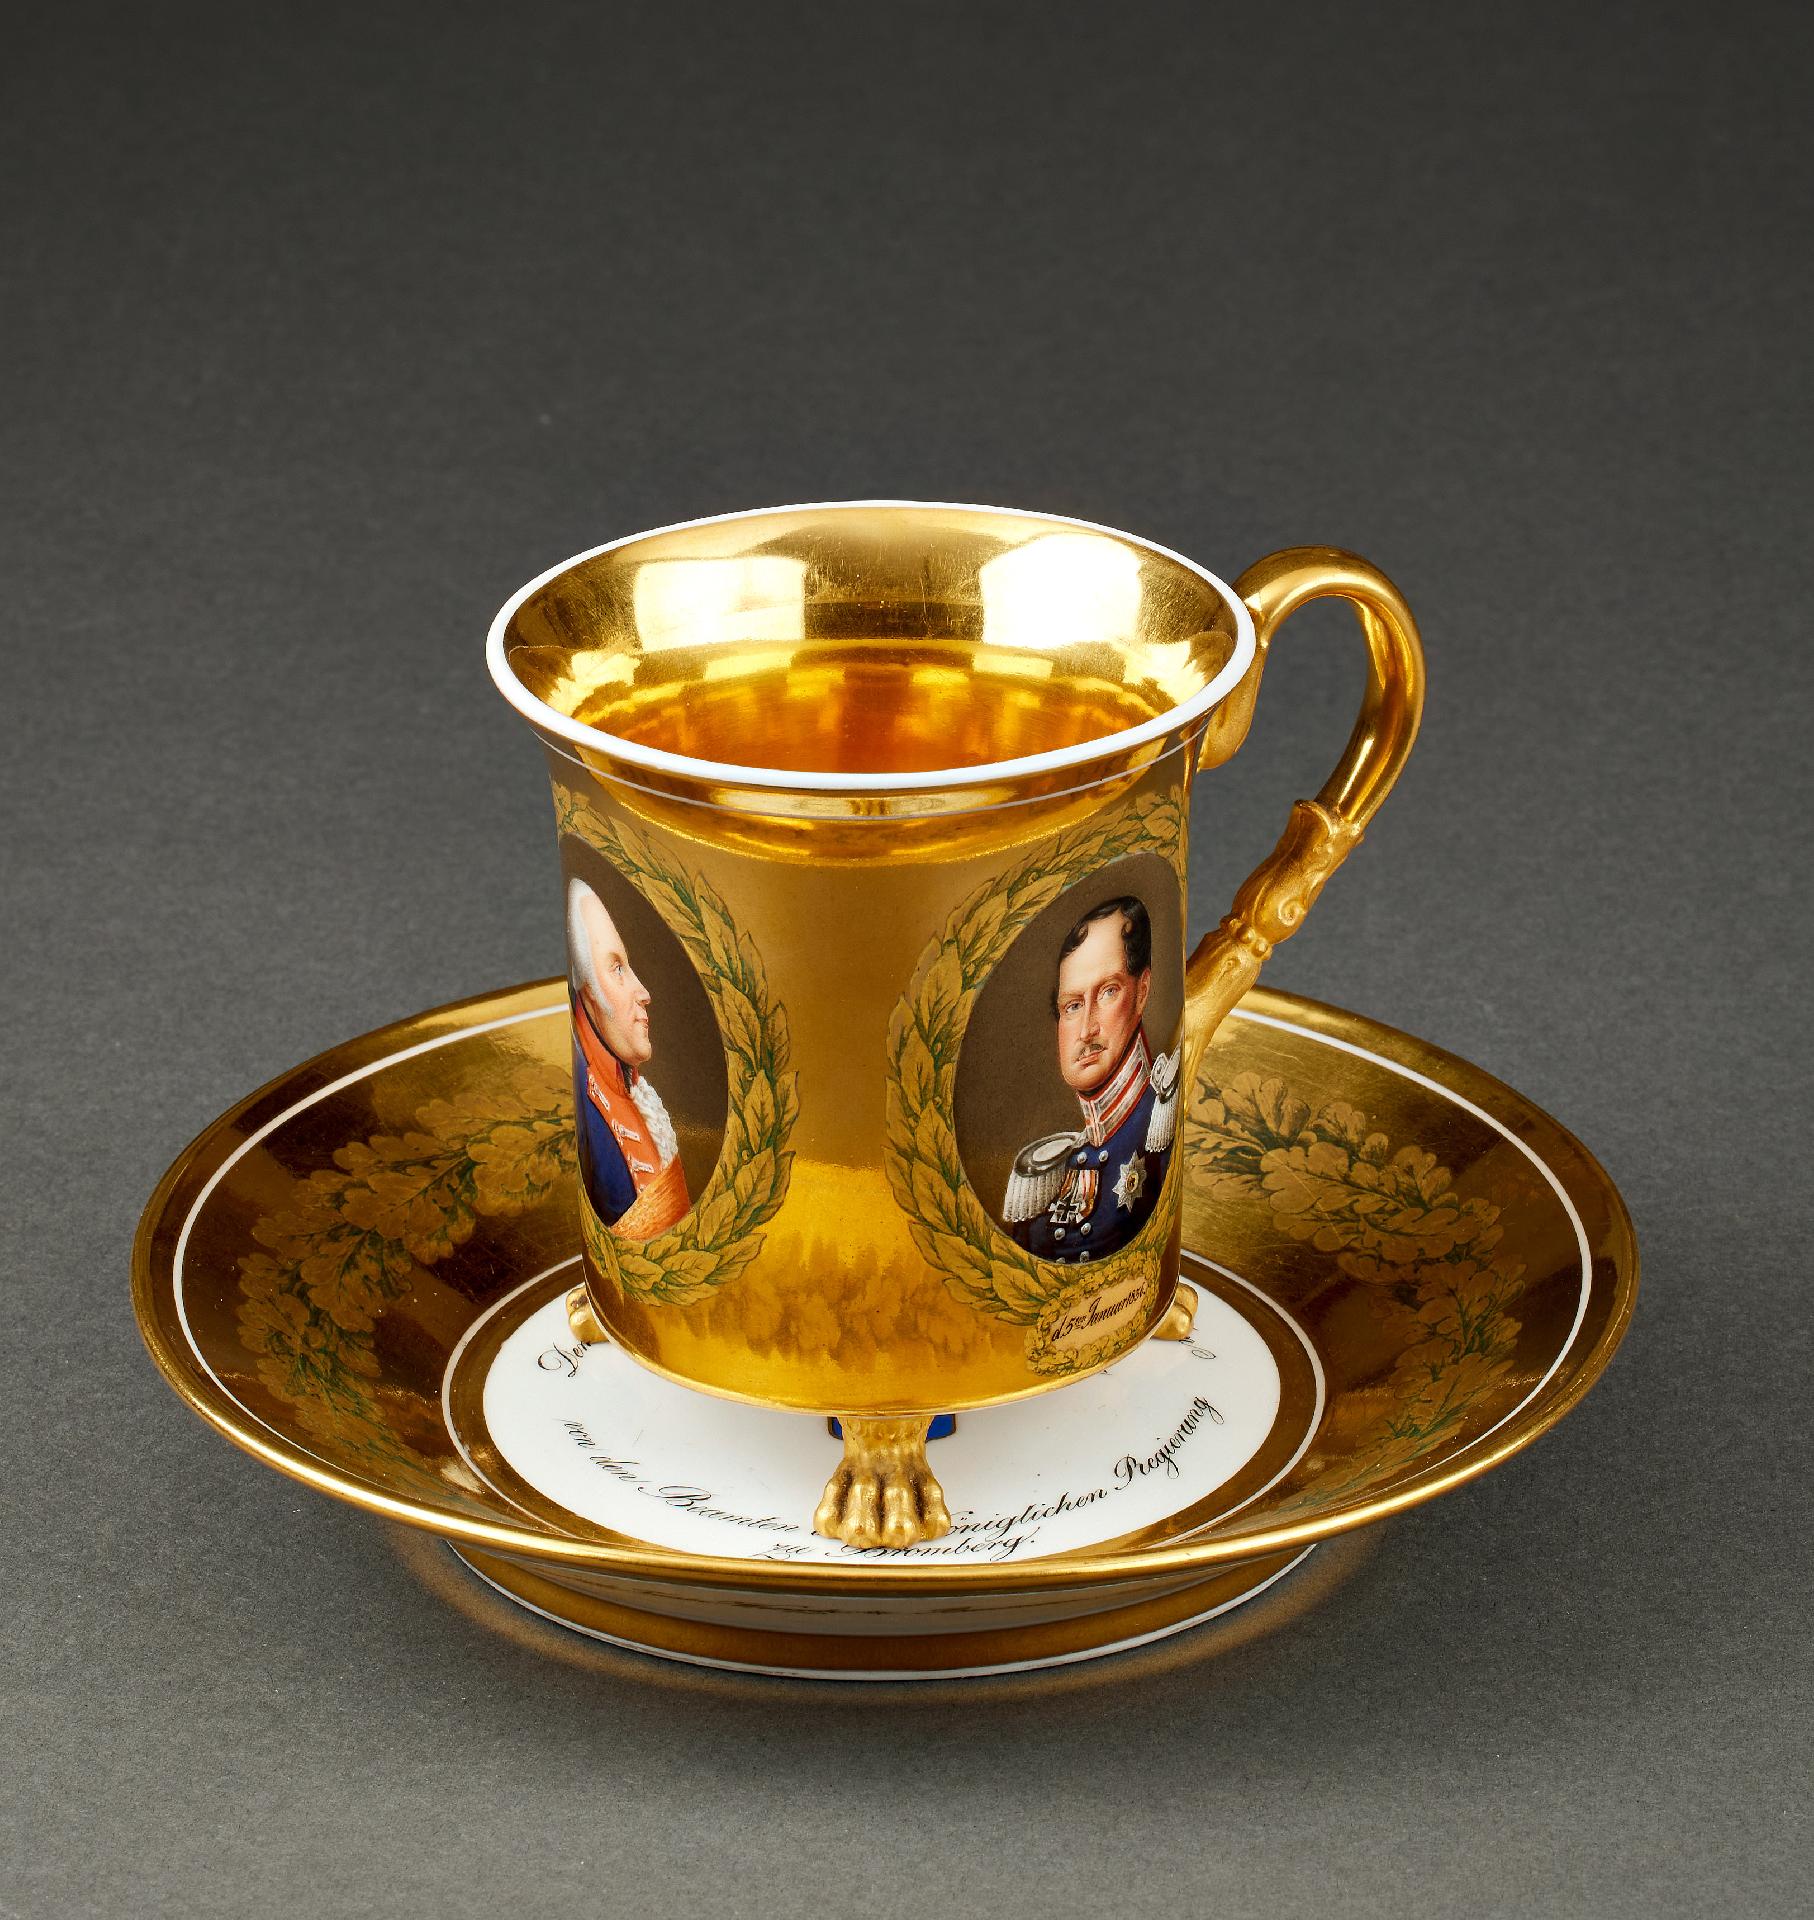 Porzellan : Prachtvolle vergoldete KPM - Tasse mit preußischen Herrscherporträts